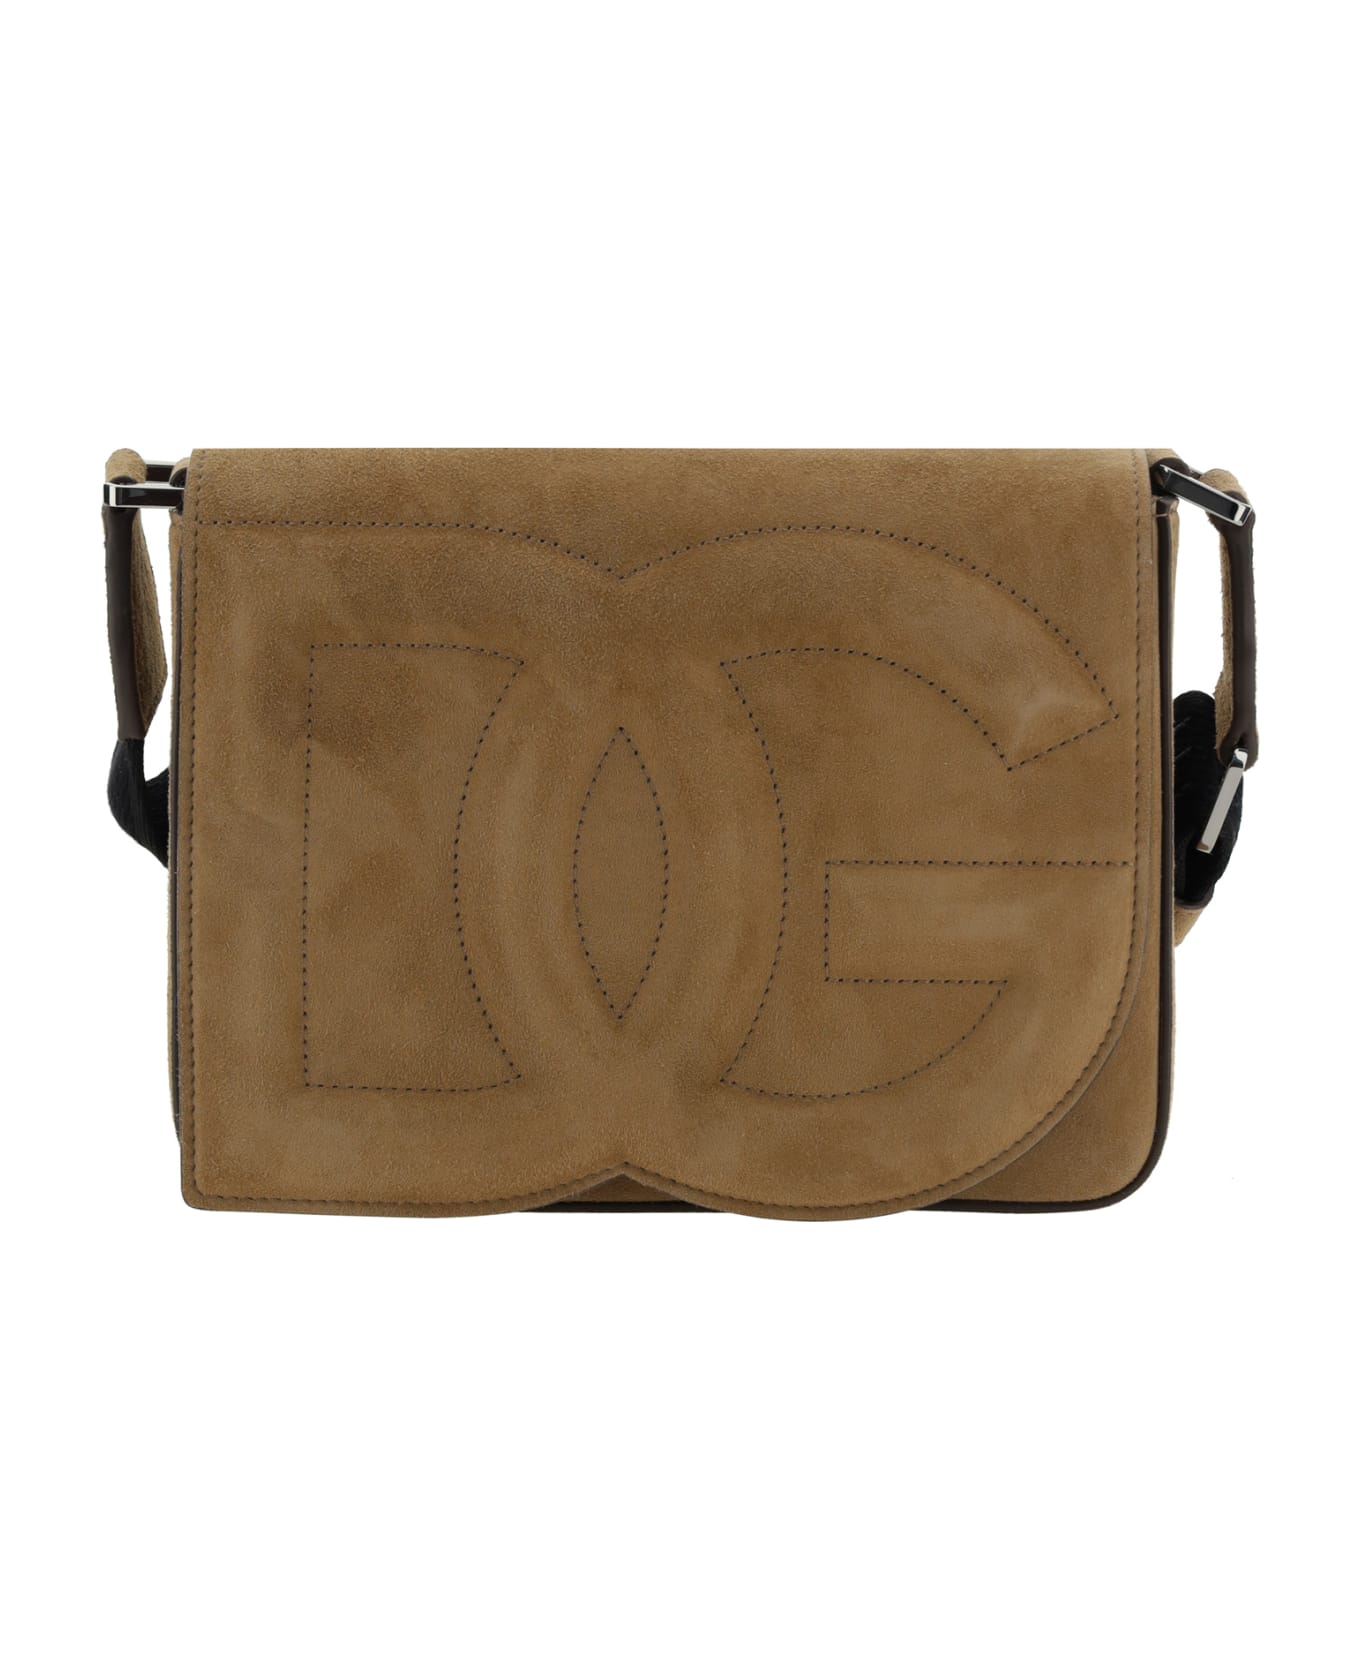 Dolce & Gabbana Shoulder Bags - Nocciola